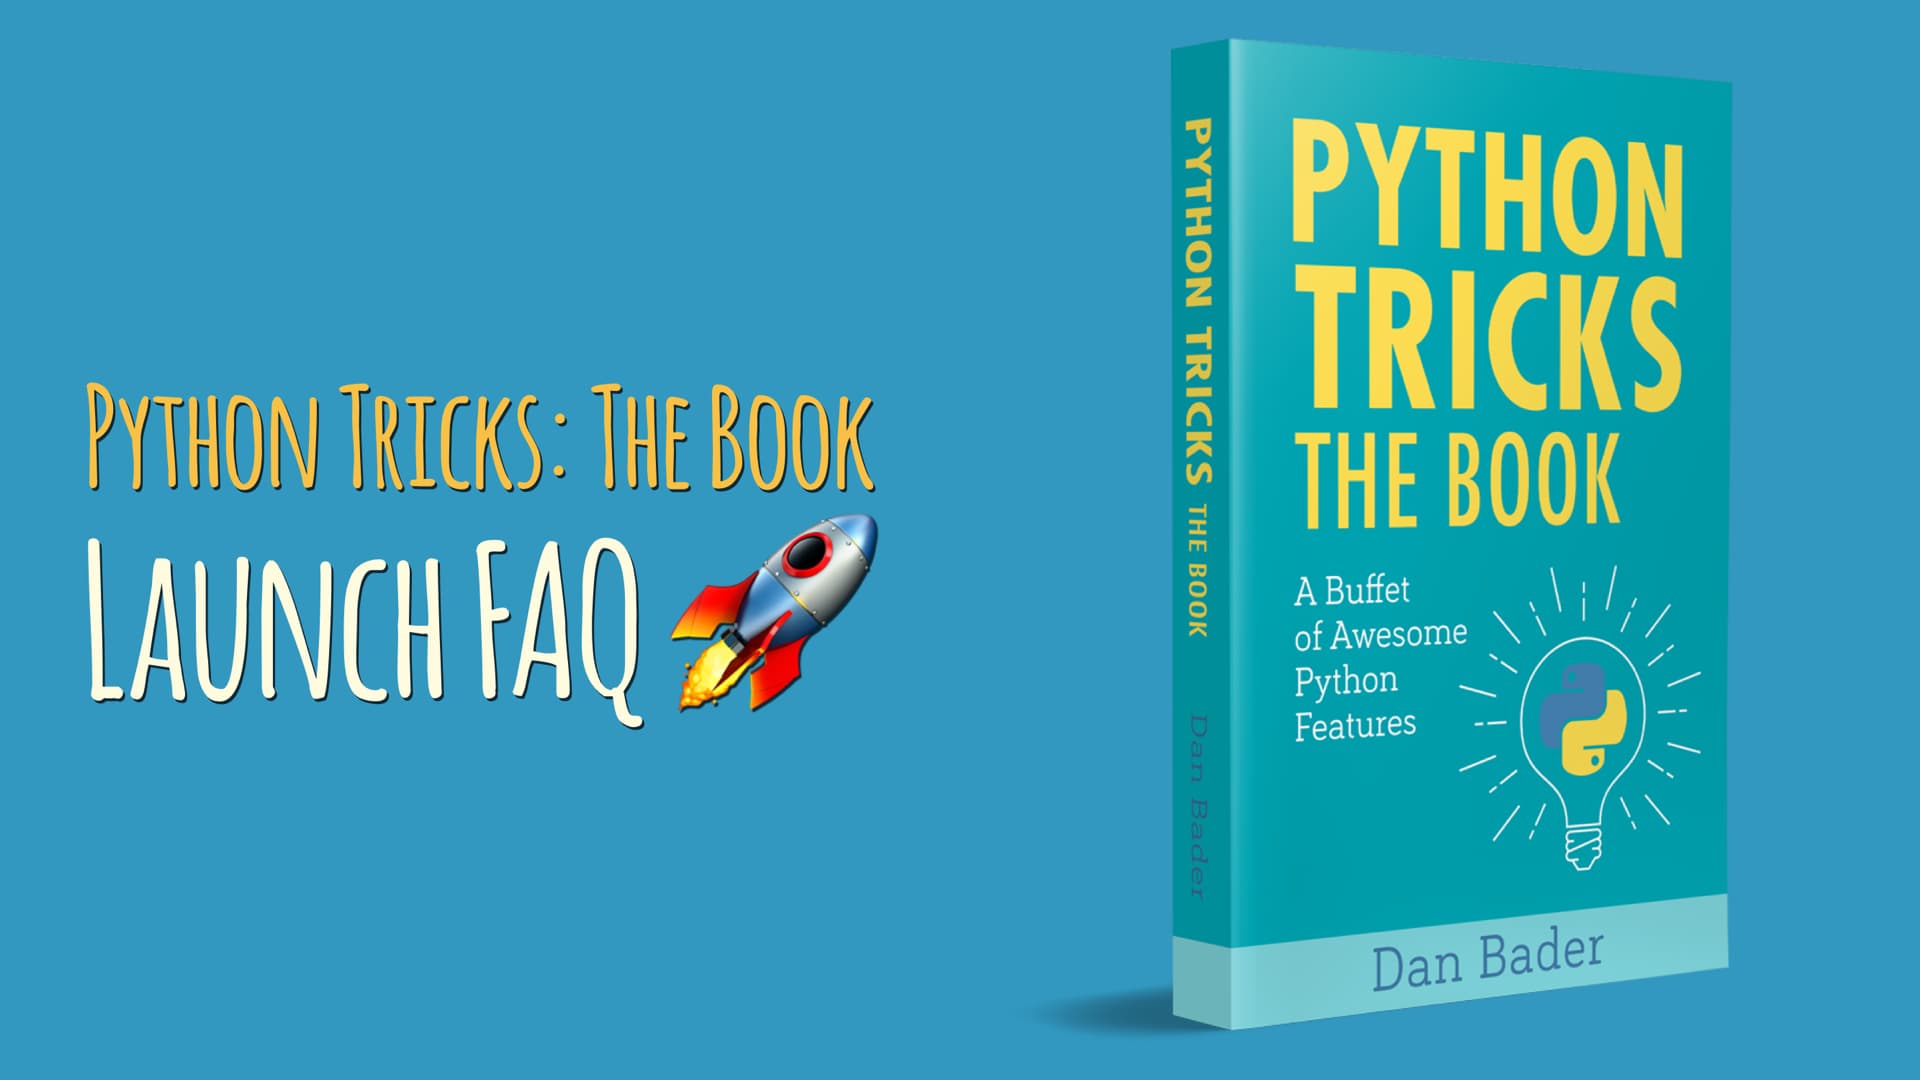 Python Tricks: The Book Launch FAQ